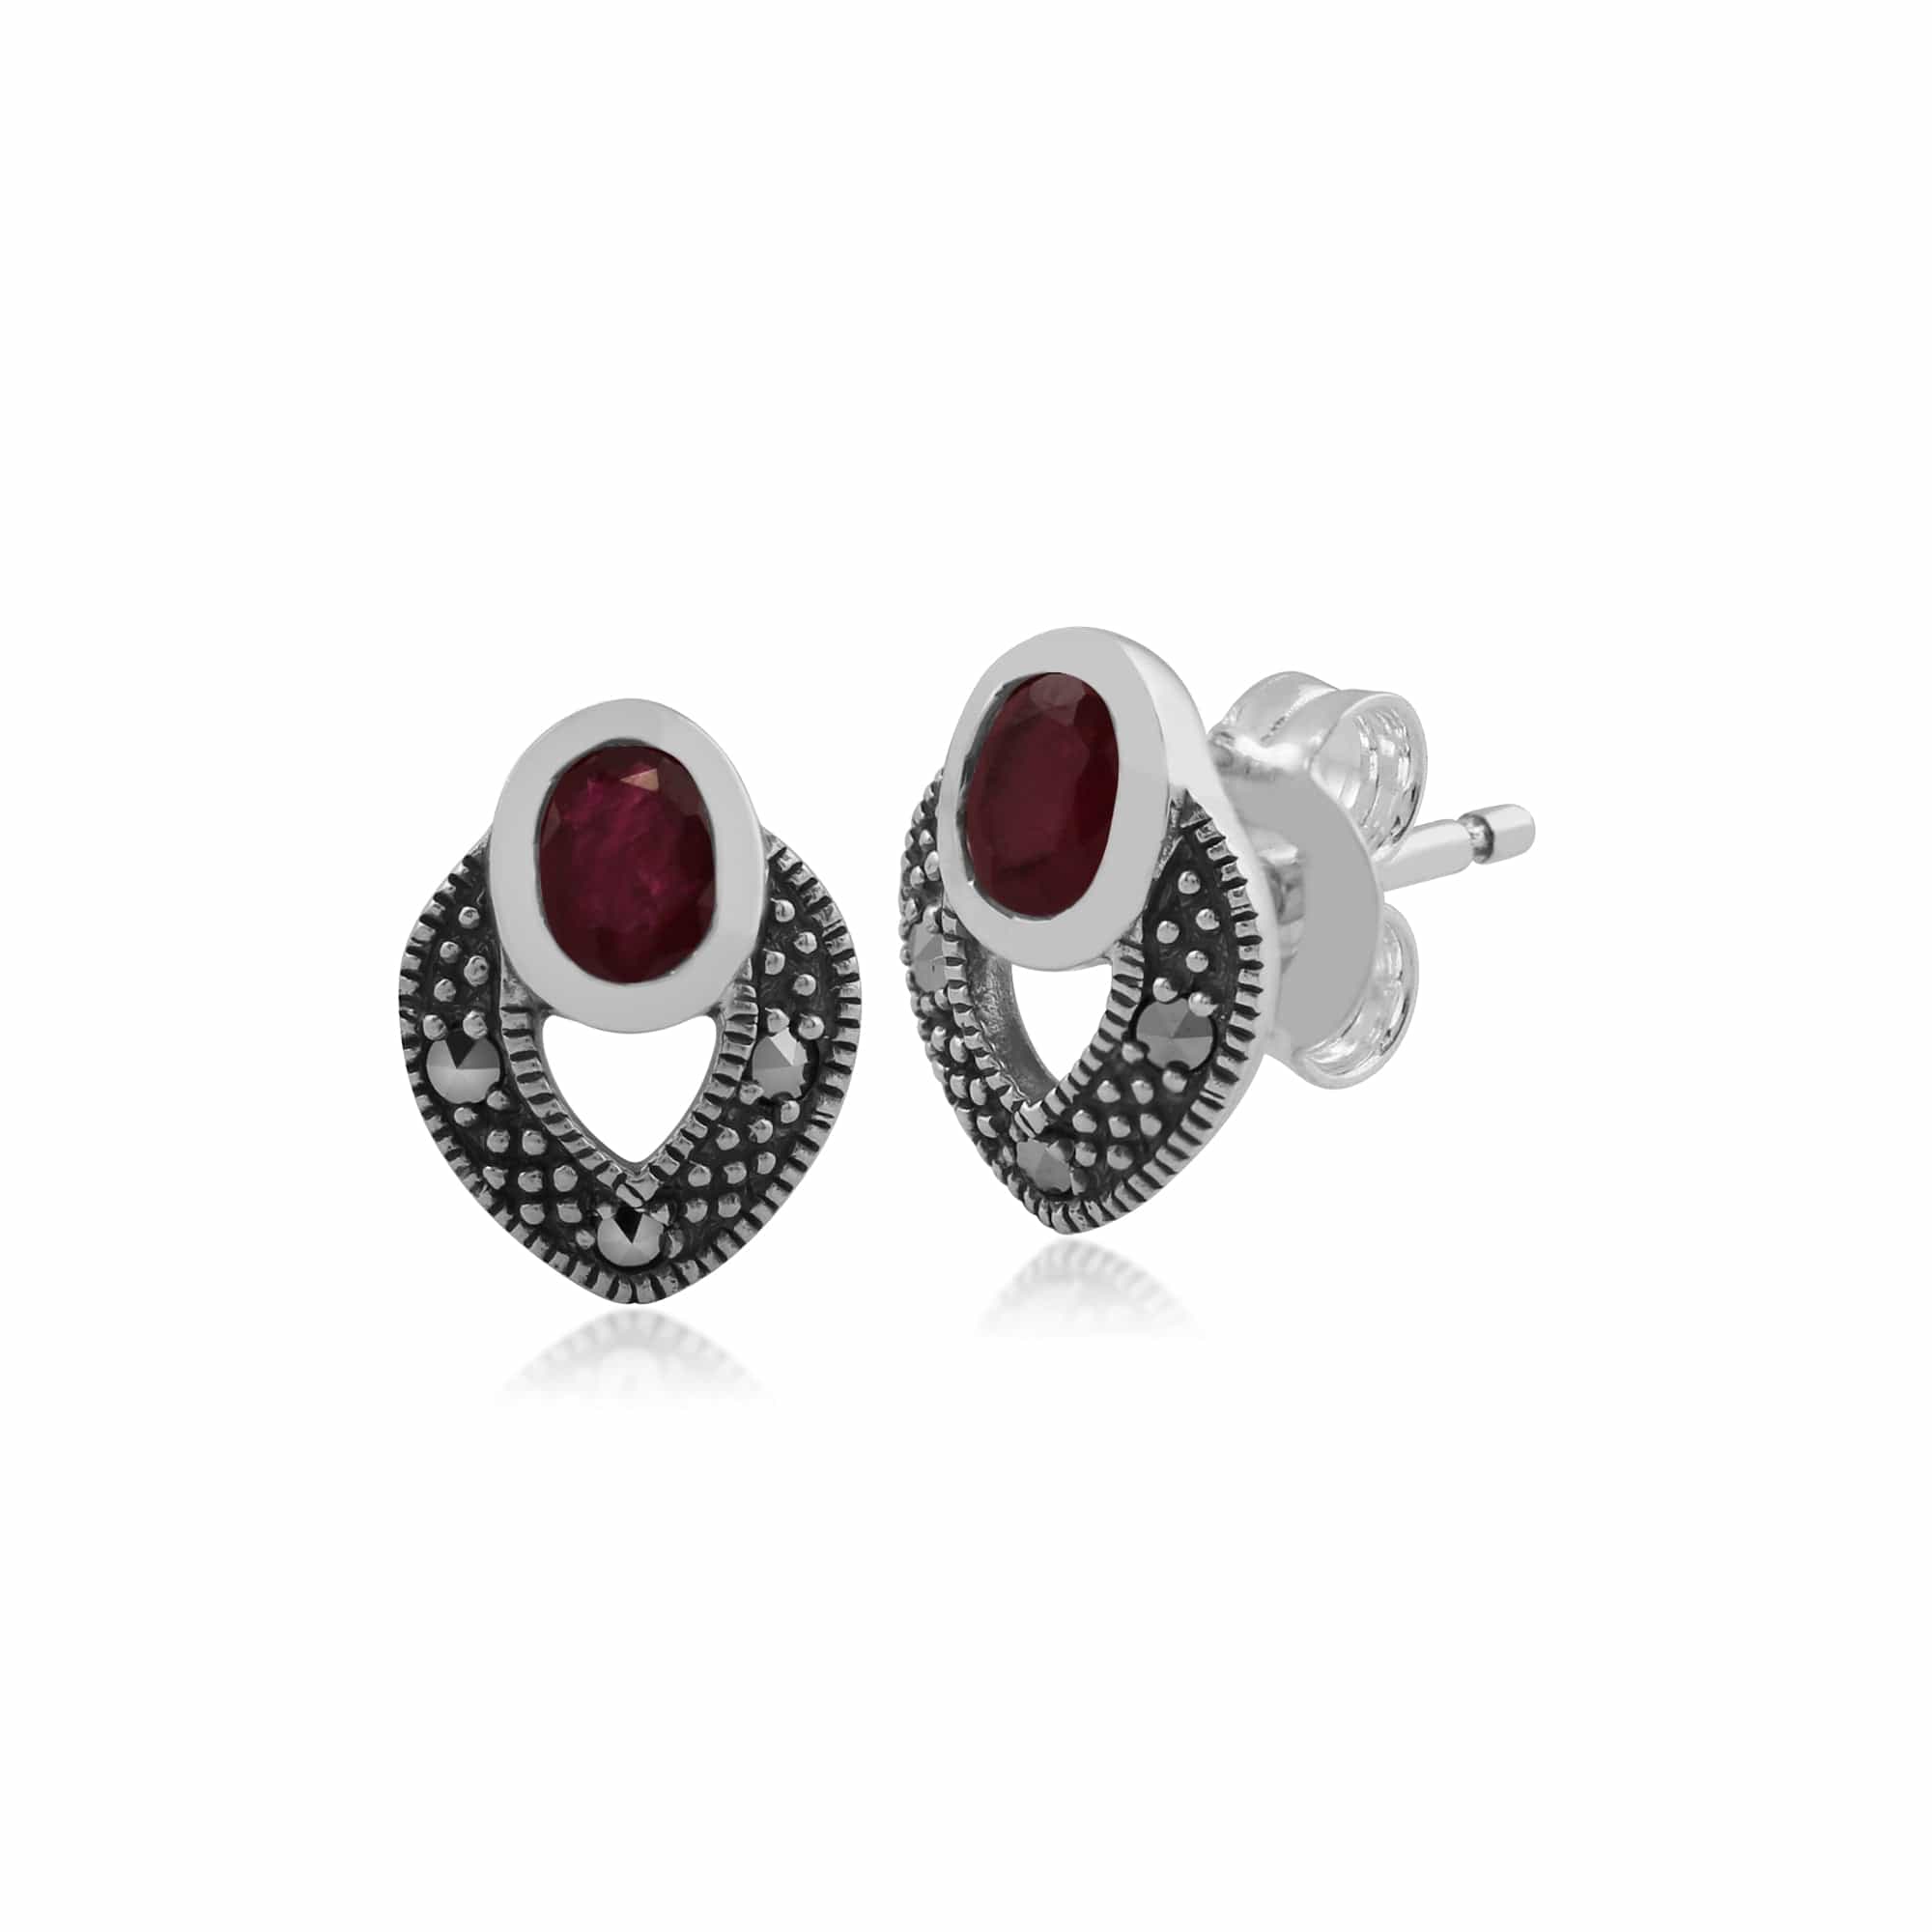 Art Deco Style Oval Ruby & Marcasite Stud Earrings & Pendant Set in 925 Sterling Silver - Gemondo